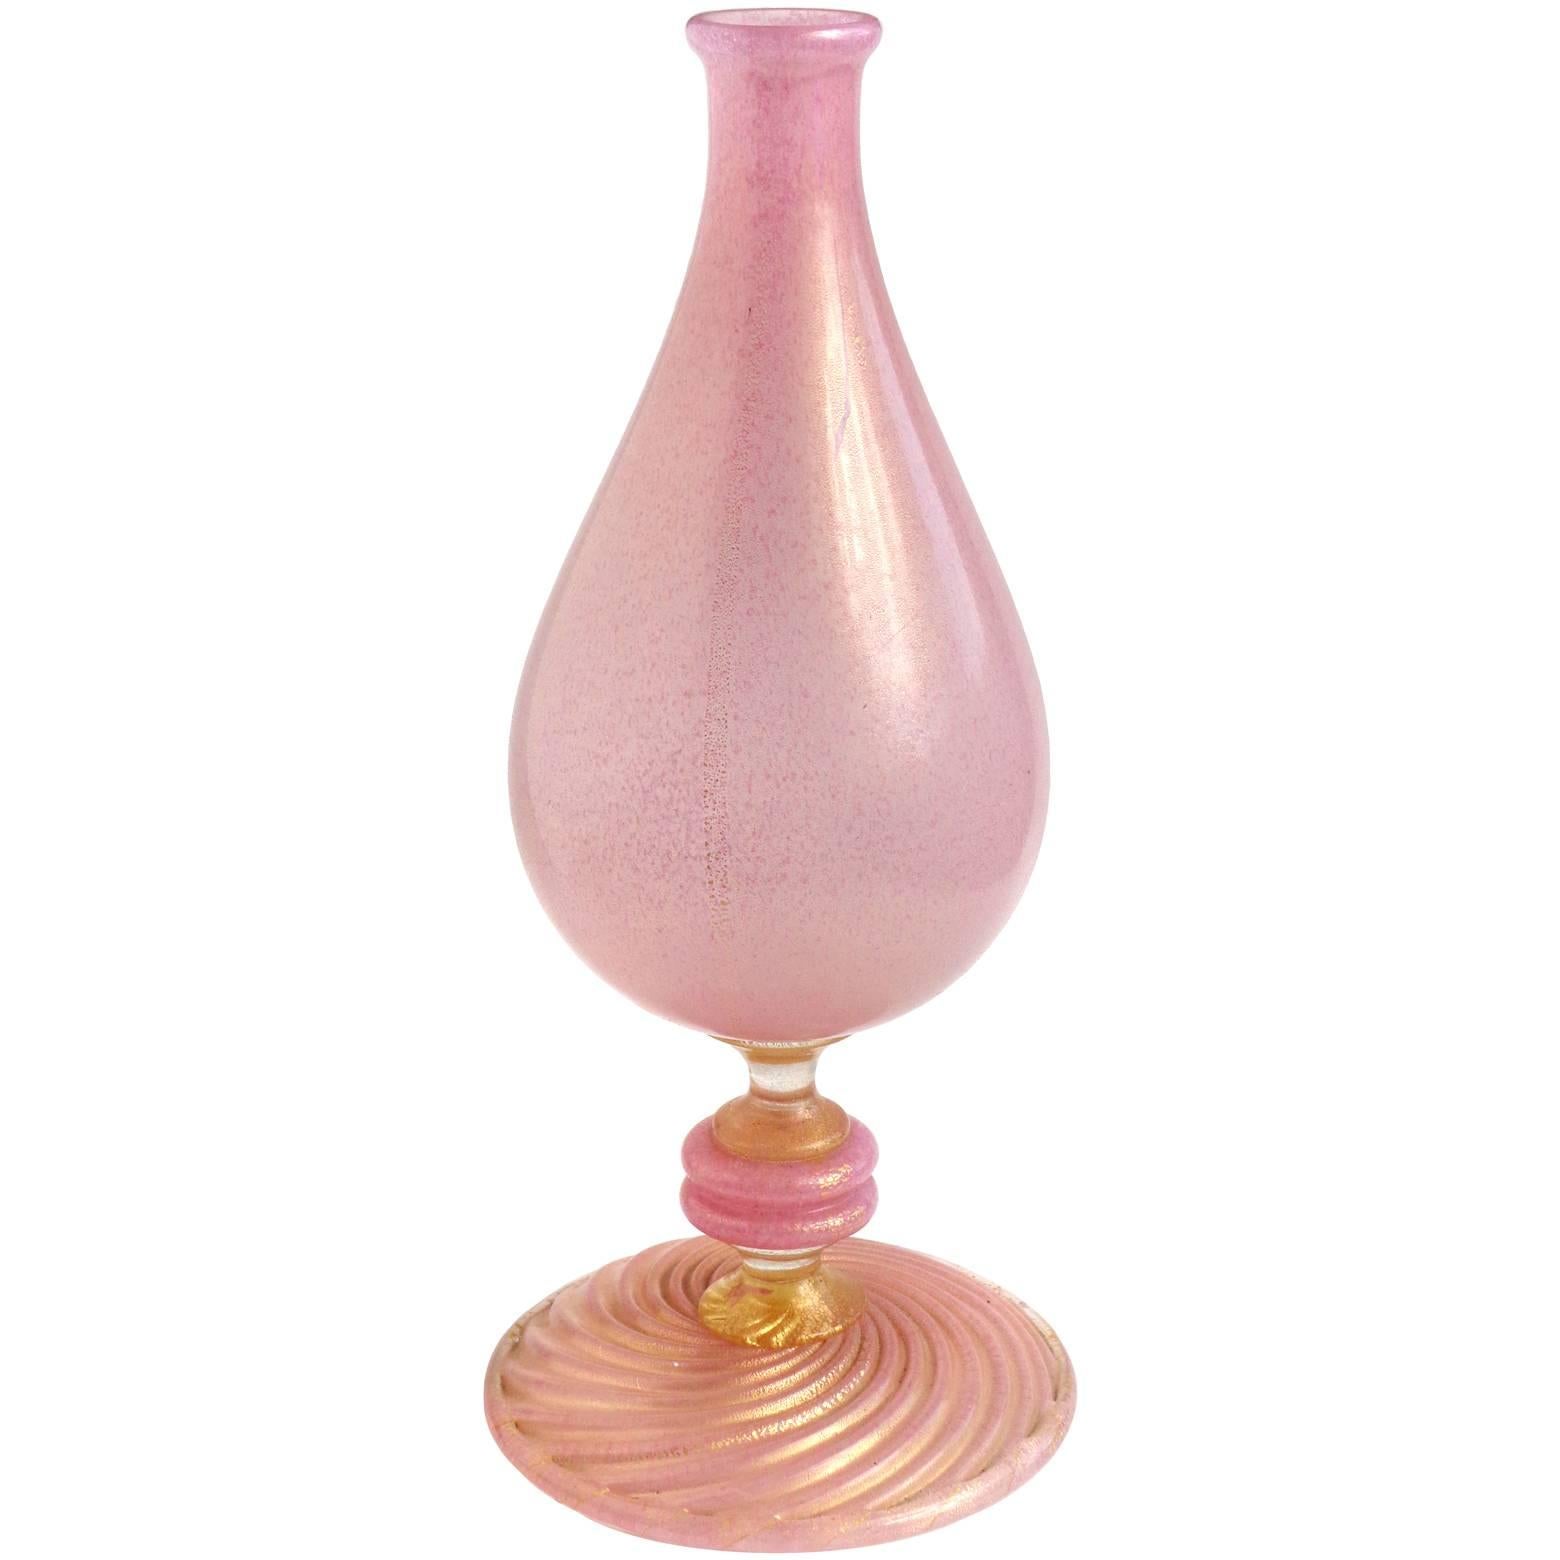 Barovier Toso Murano Pink Gold Flecks Italian Art Glass Specimen Flower Vase